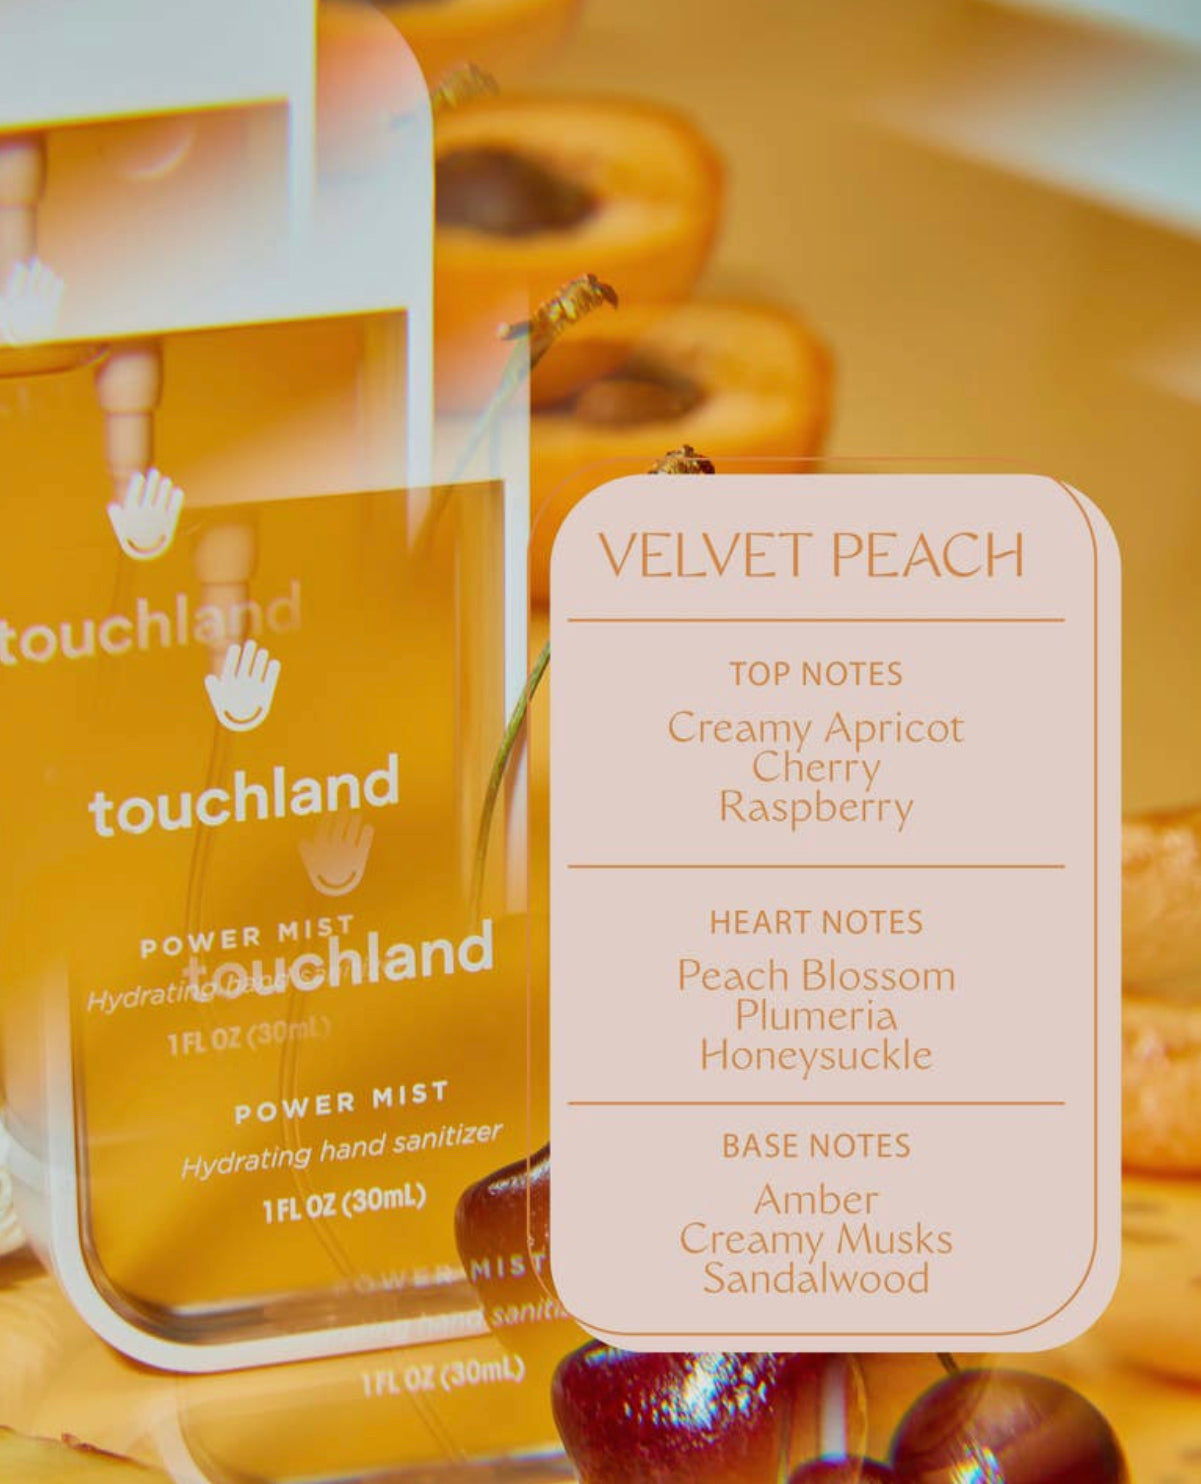 Velvet Peach Touchland